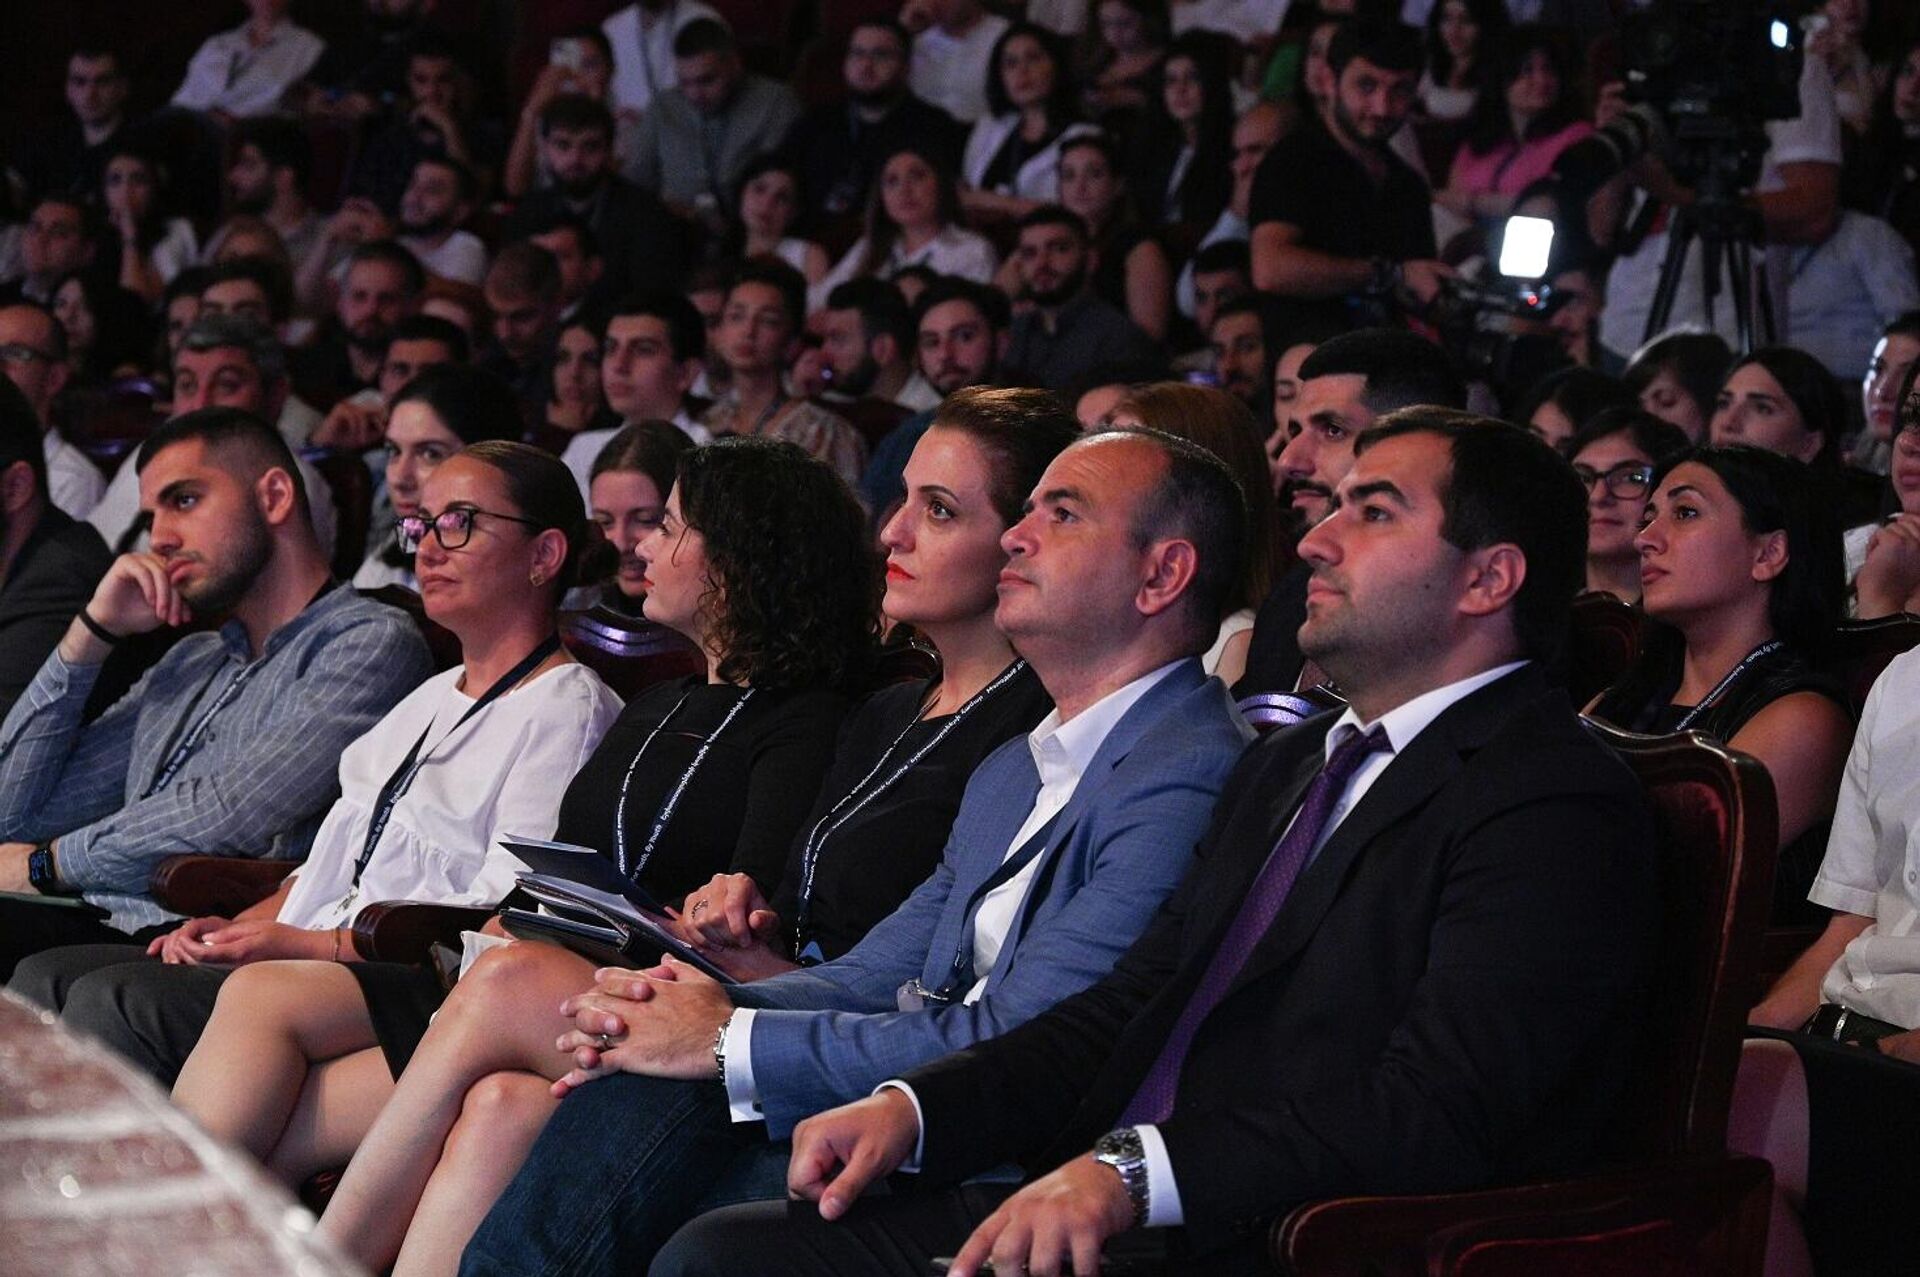 Стартовал Национальный молодежный форум, в котором принимают участие 600 молодых армян Диаспоры в возрасте 18-35 лет из более чем 50 стран мира (1 августа 2023). Еревaн - Sputnik Армения, 1920, 01.08.2023